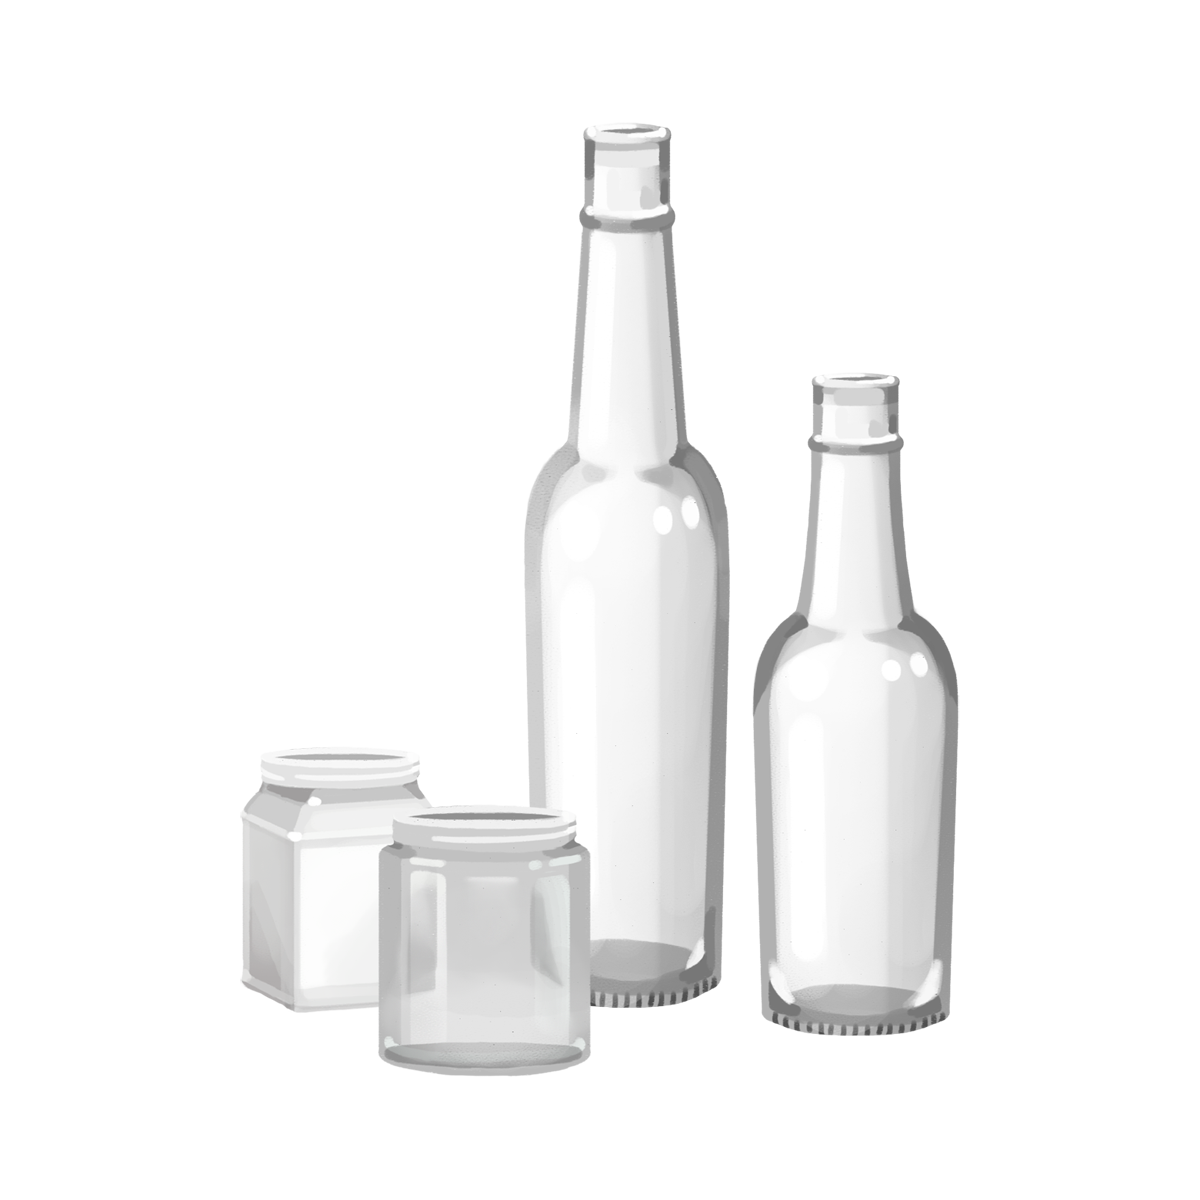 透明な空き瓶のイラスト エコのモト